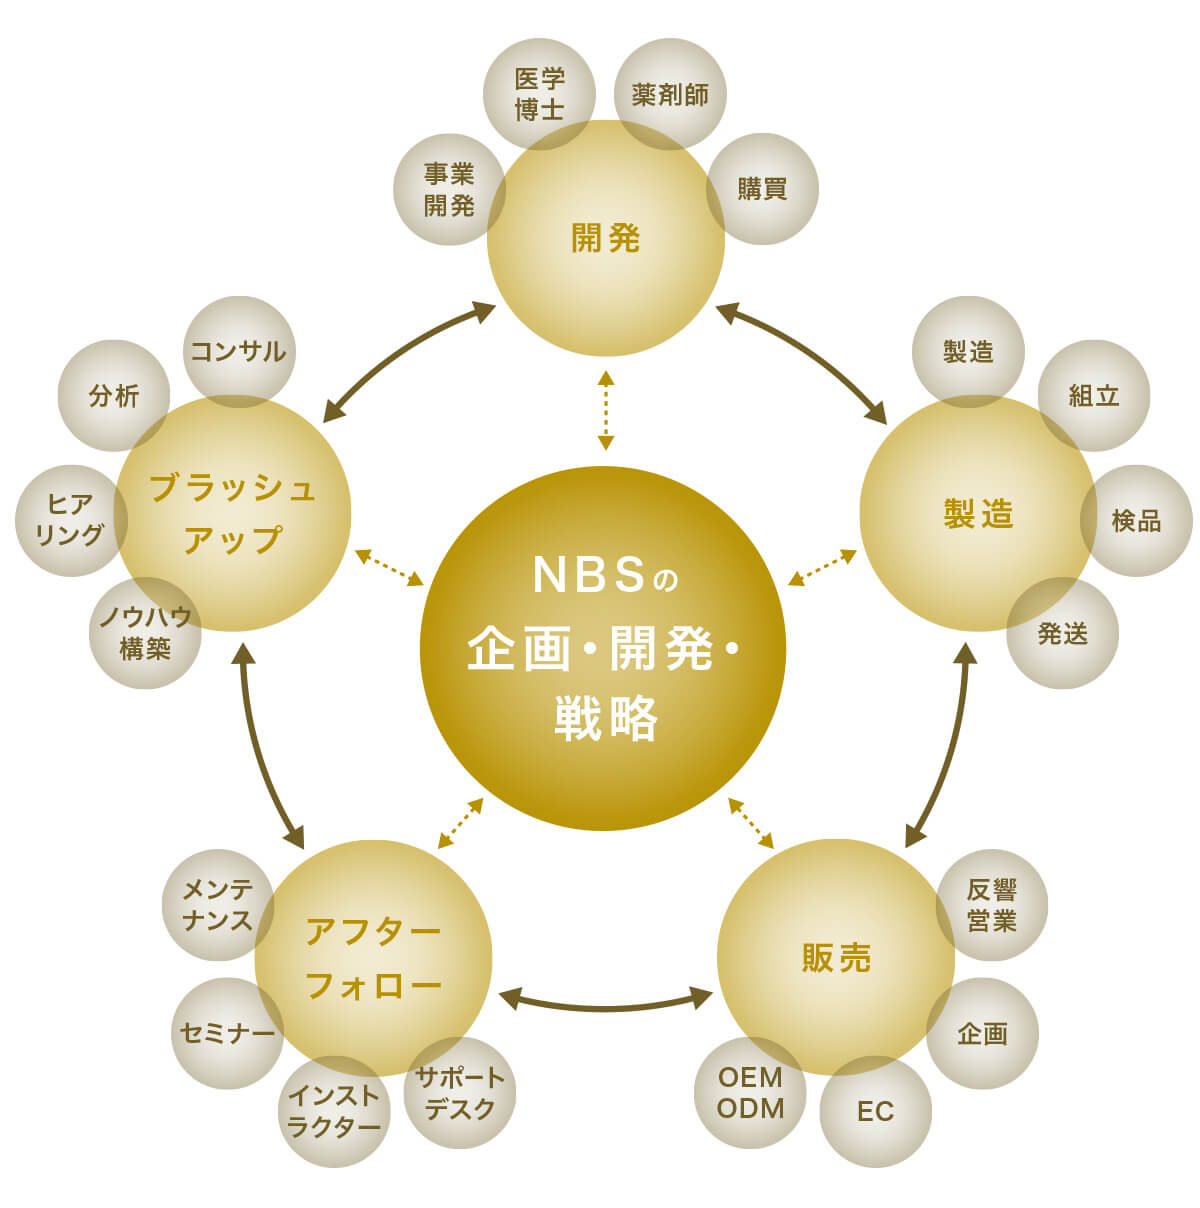 NBSの企画・開発・戦略